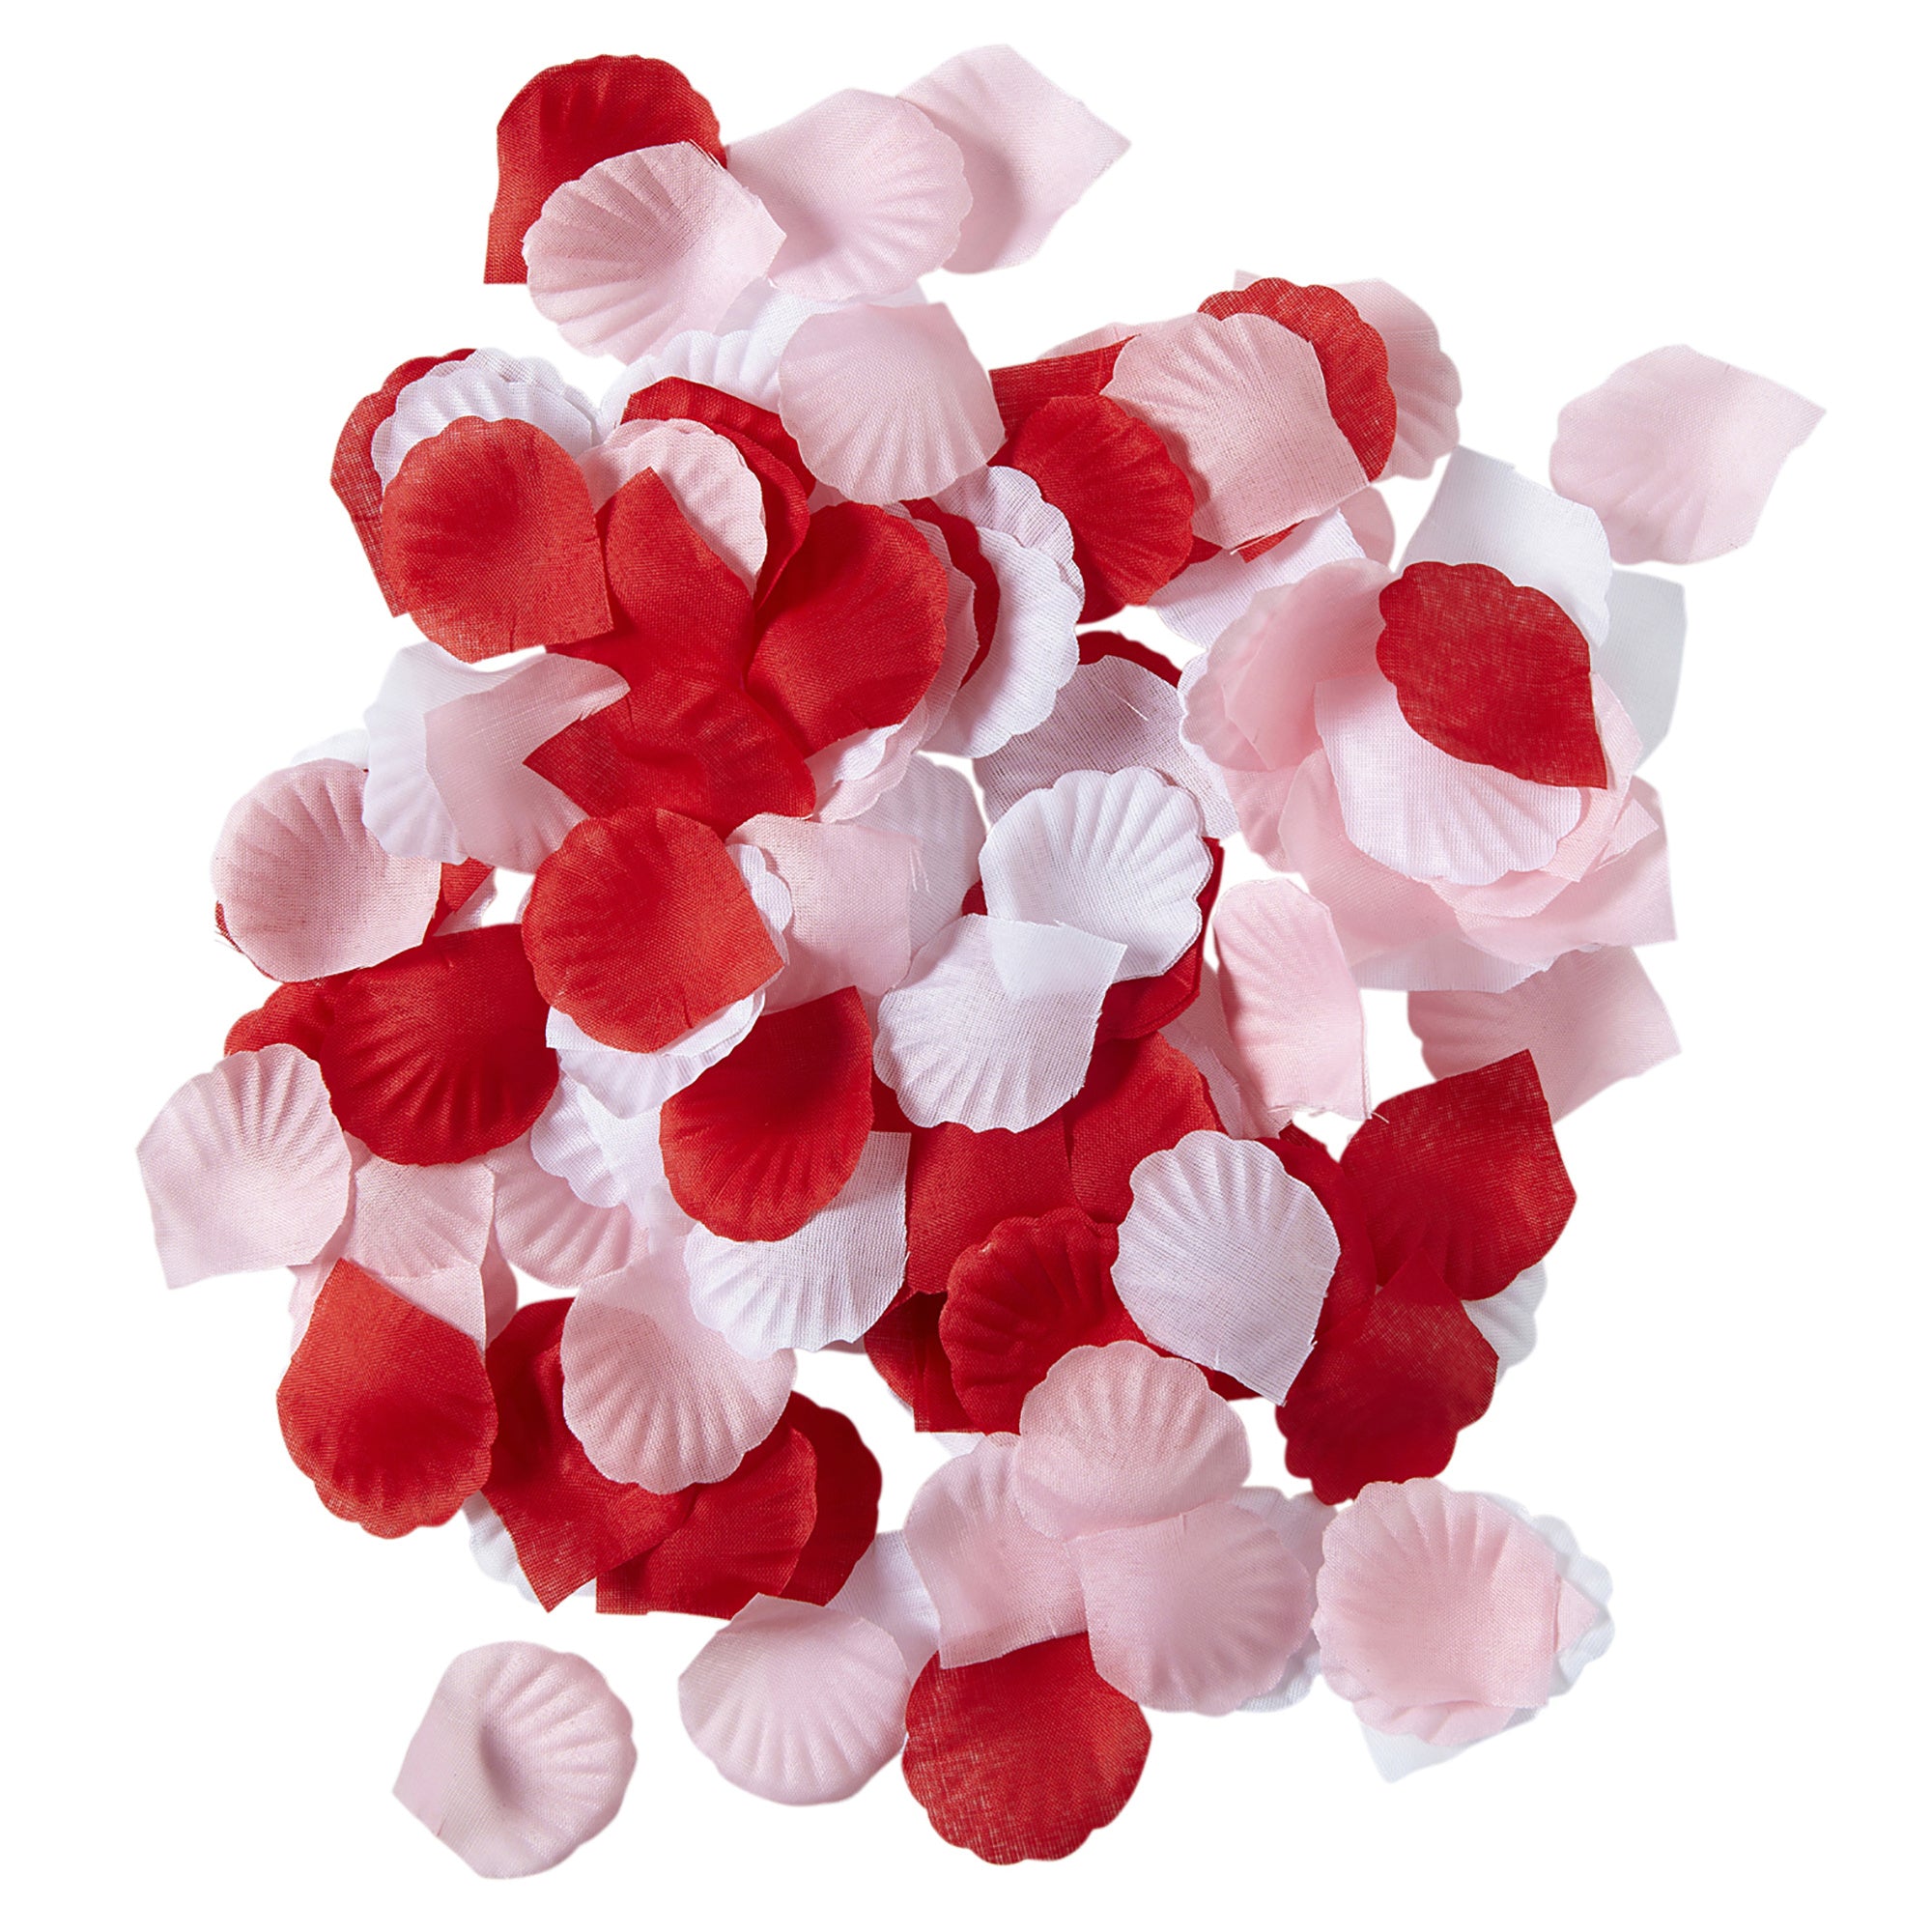 Feestaccessoires: Nep rozenblaadjes rood, roze en wit